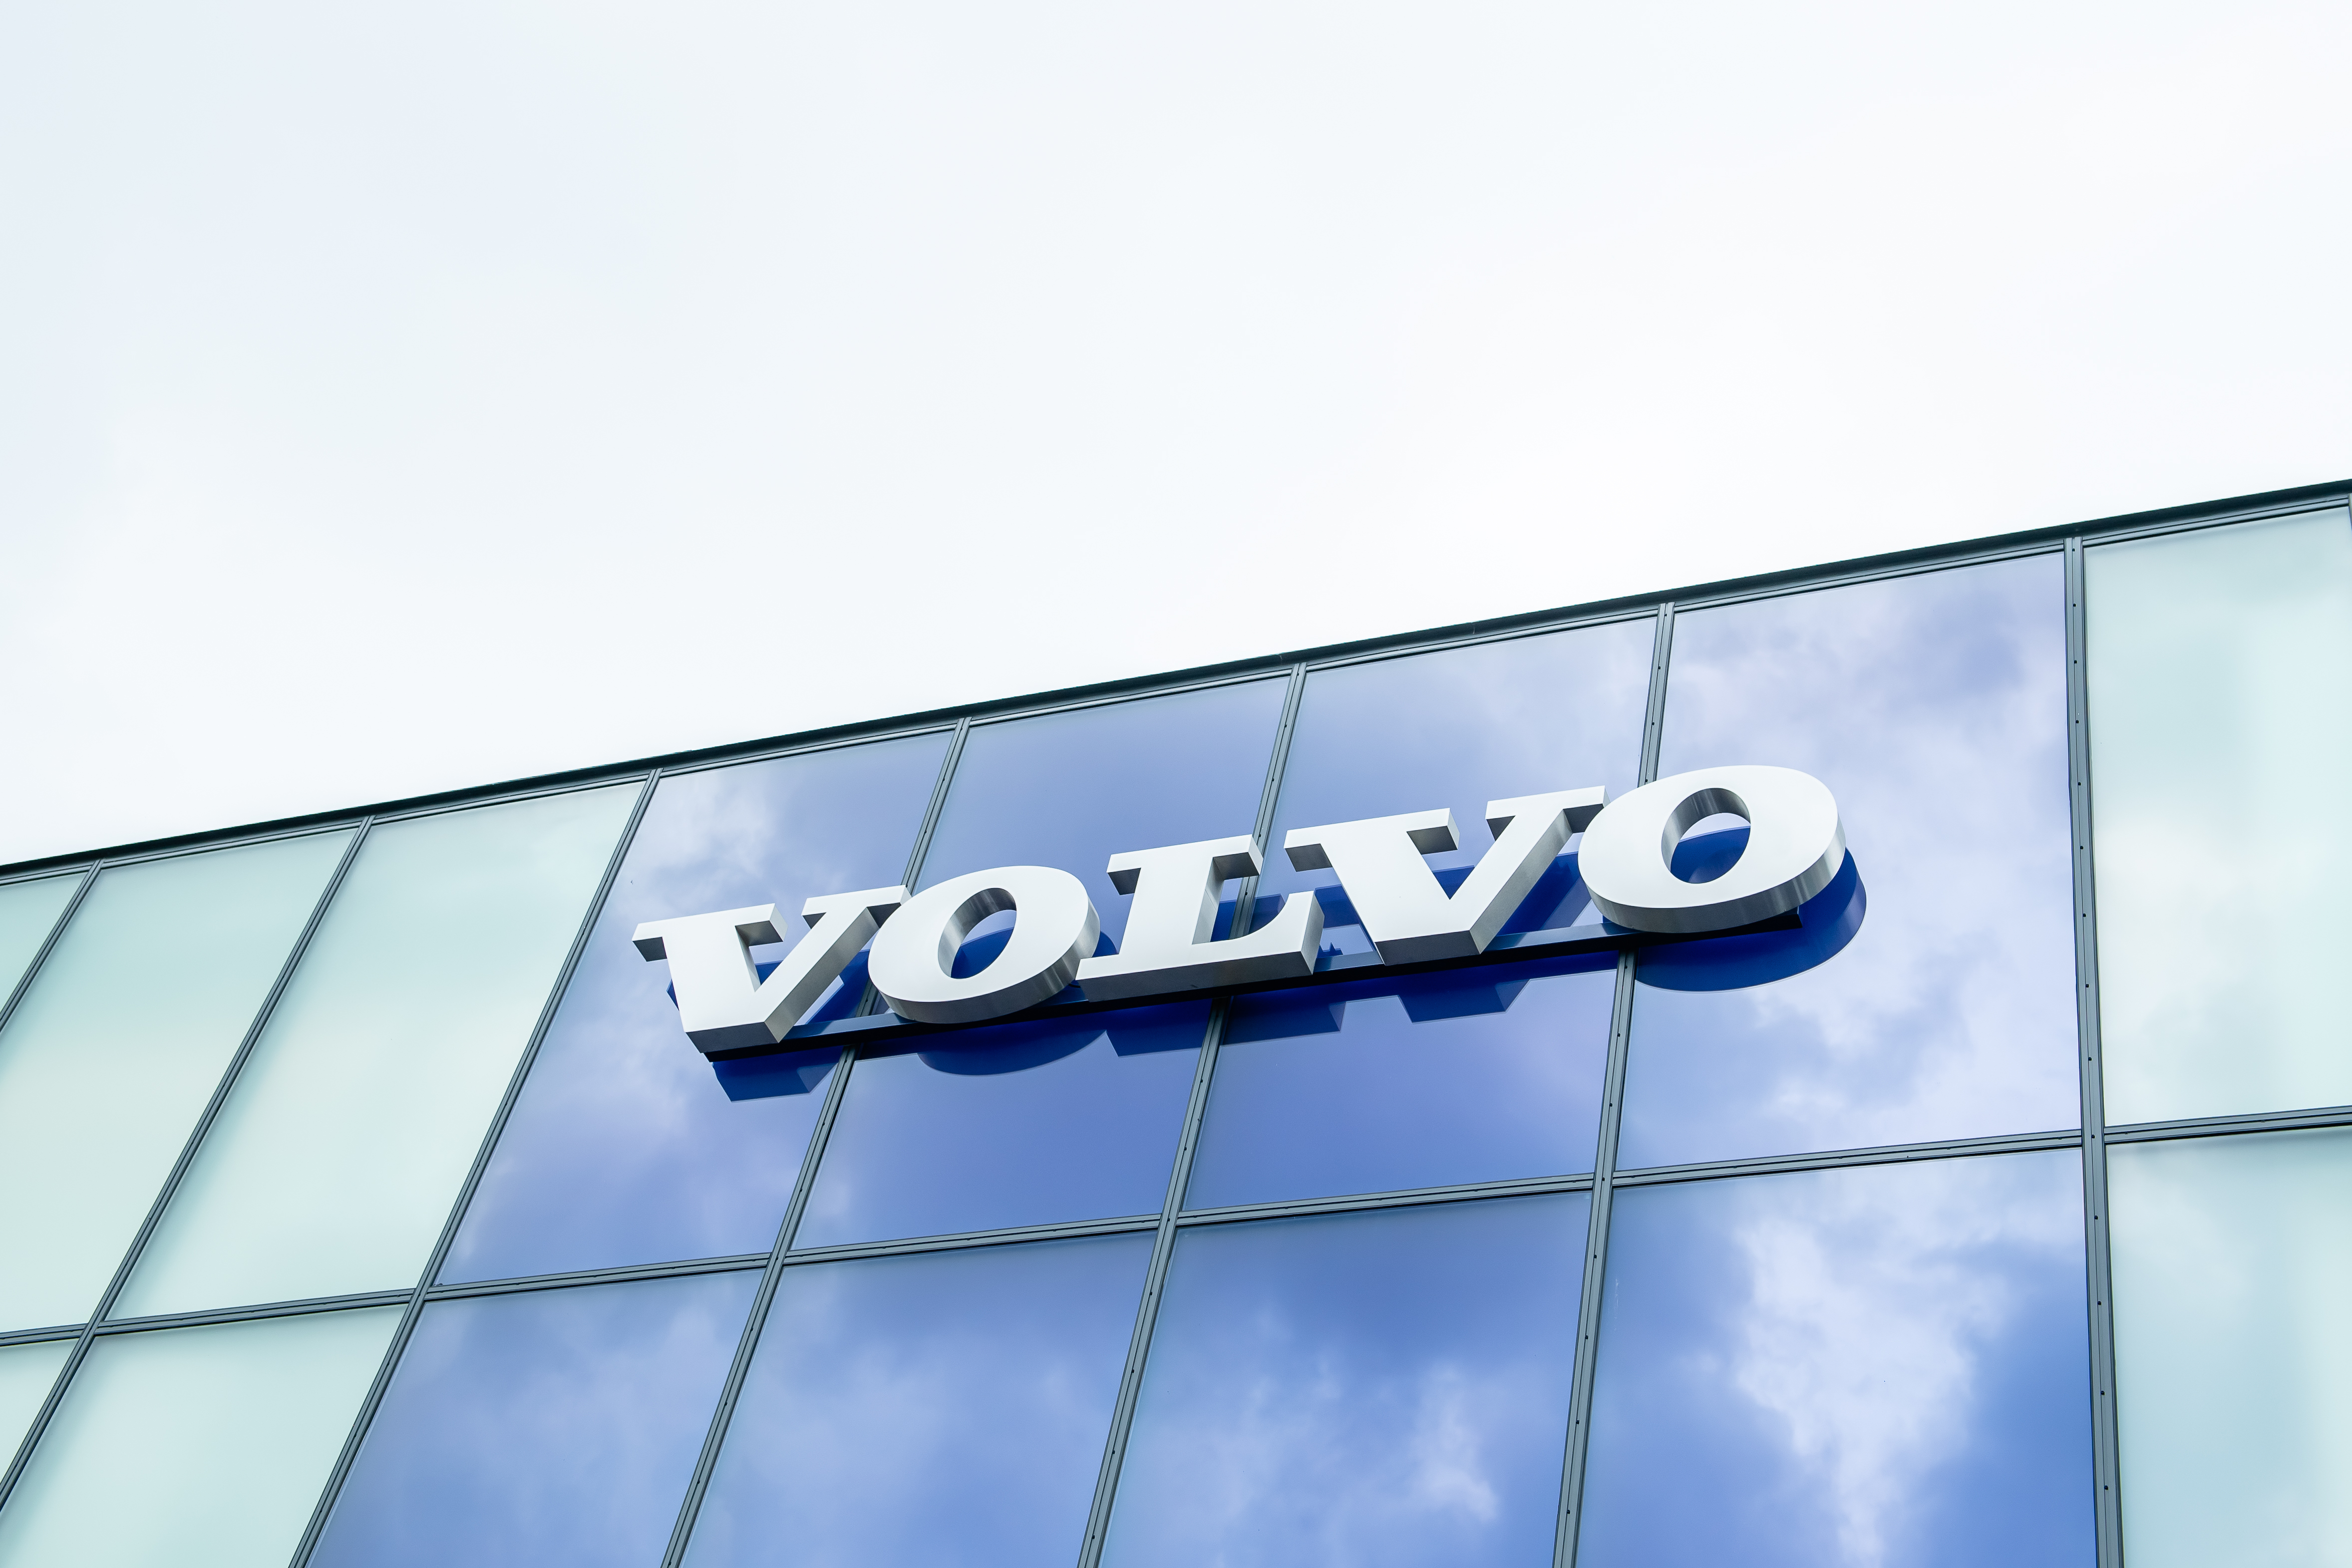 Volvo Cars şi-a dublat reţeaua de dealeri autorizaţi în România în ultimii trei ani, după ce anul acesta s-a extins în Timişoara, Oradea şi Târgu Mureş